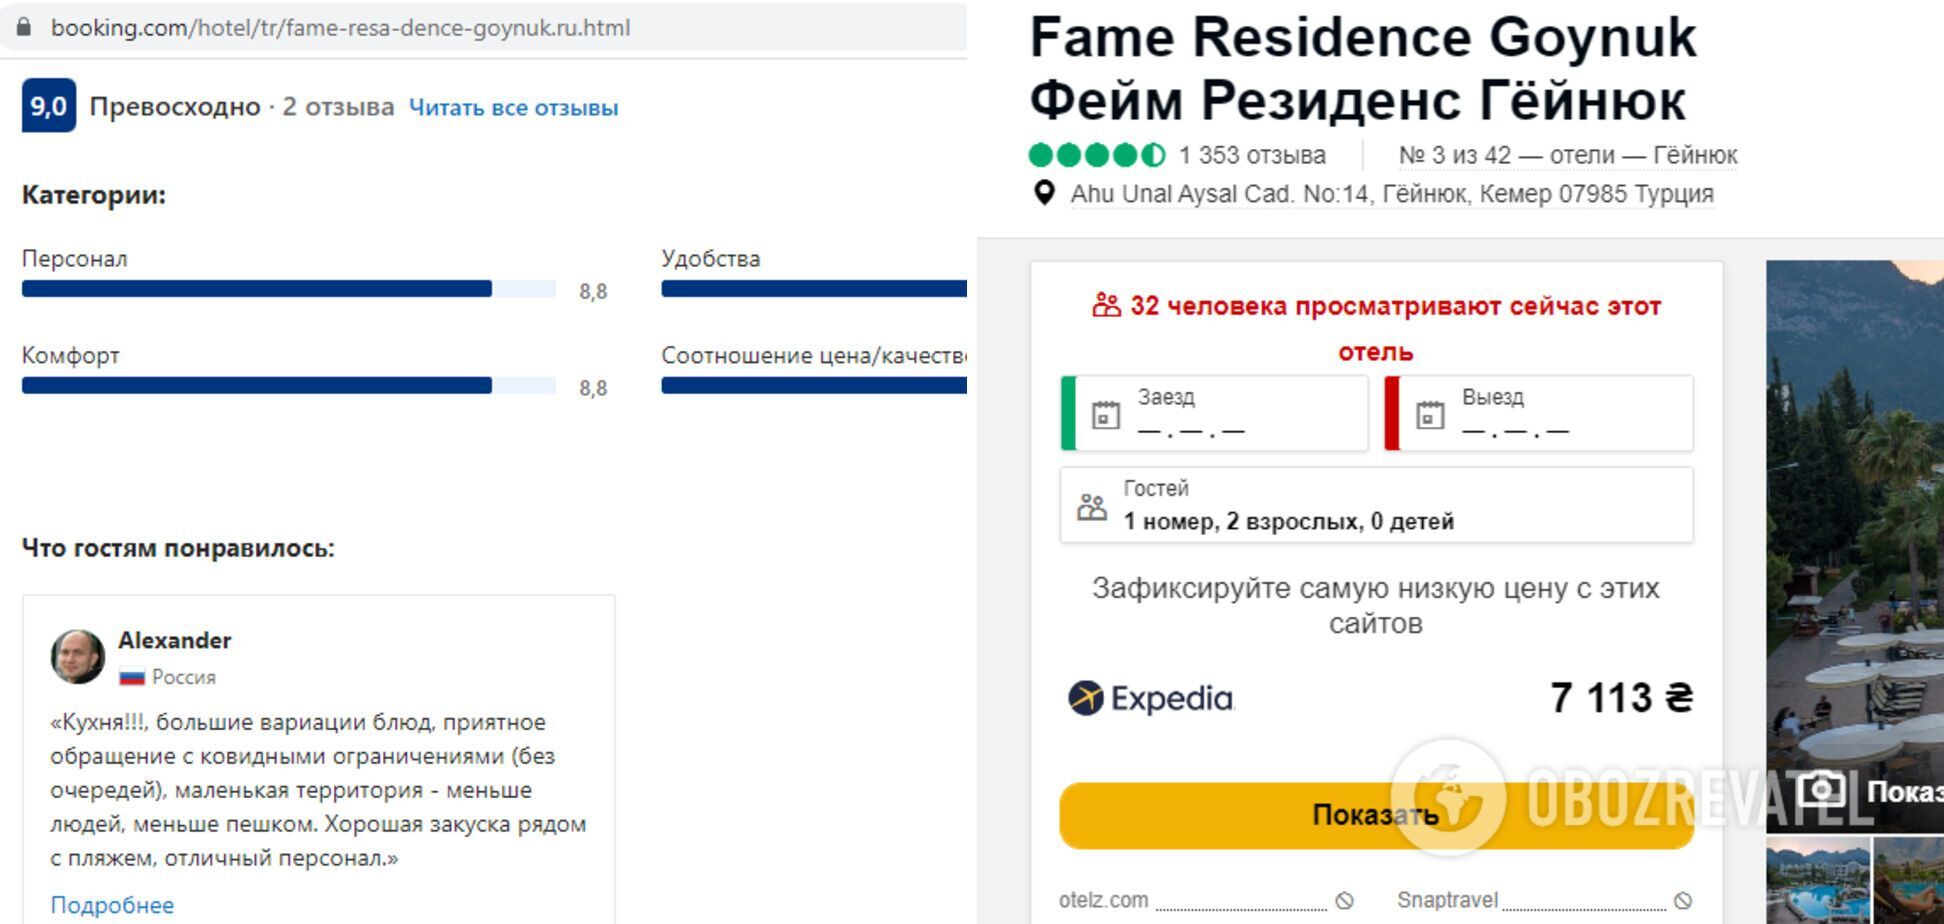 Fame Residence Goynuk має найвищий рейтинг.